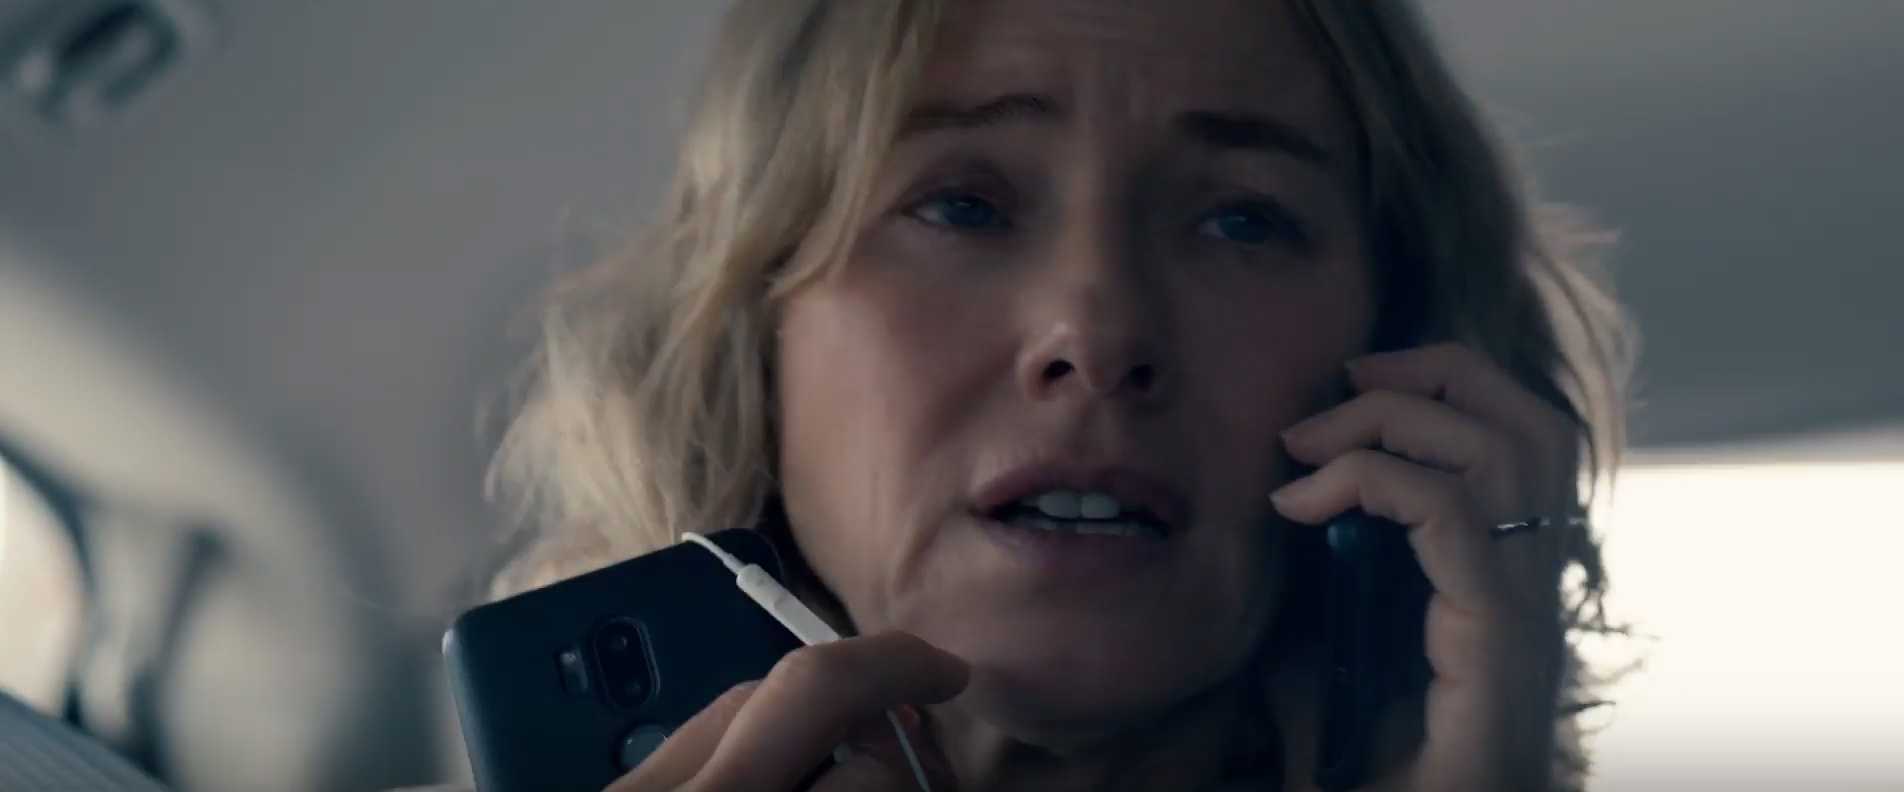 Trailer Corsa contro il tempo - The desperate hour, film con Naomi Watts